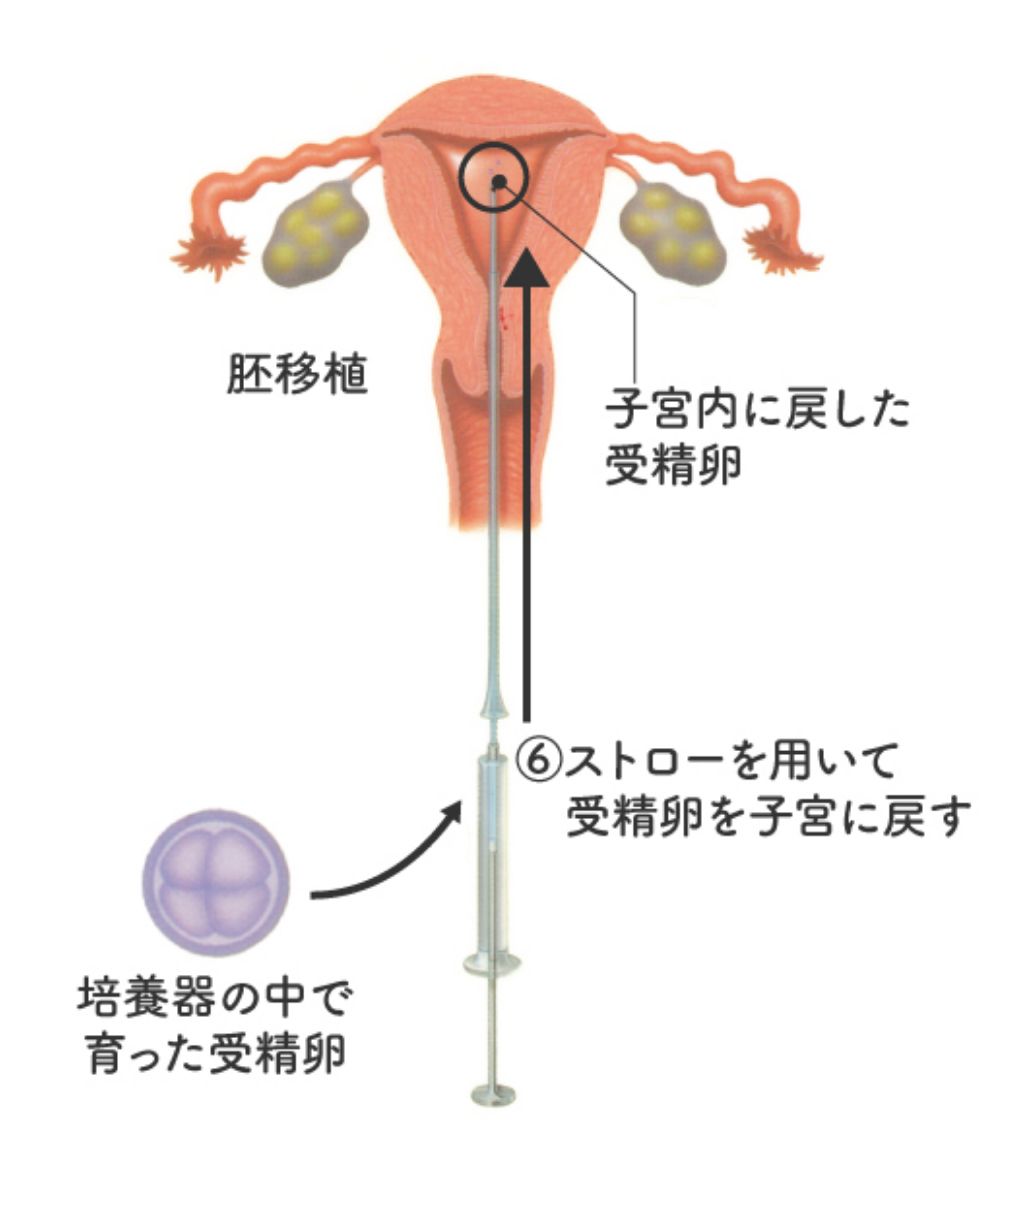 体外受精の手順⑥ 育った受精卵はストローを用いて子宮に戻す(移植)